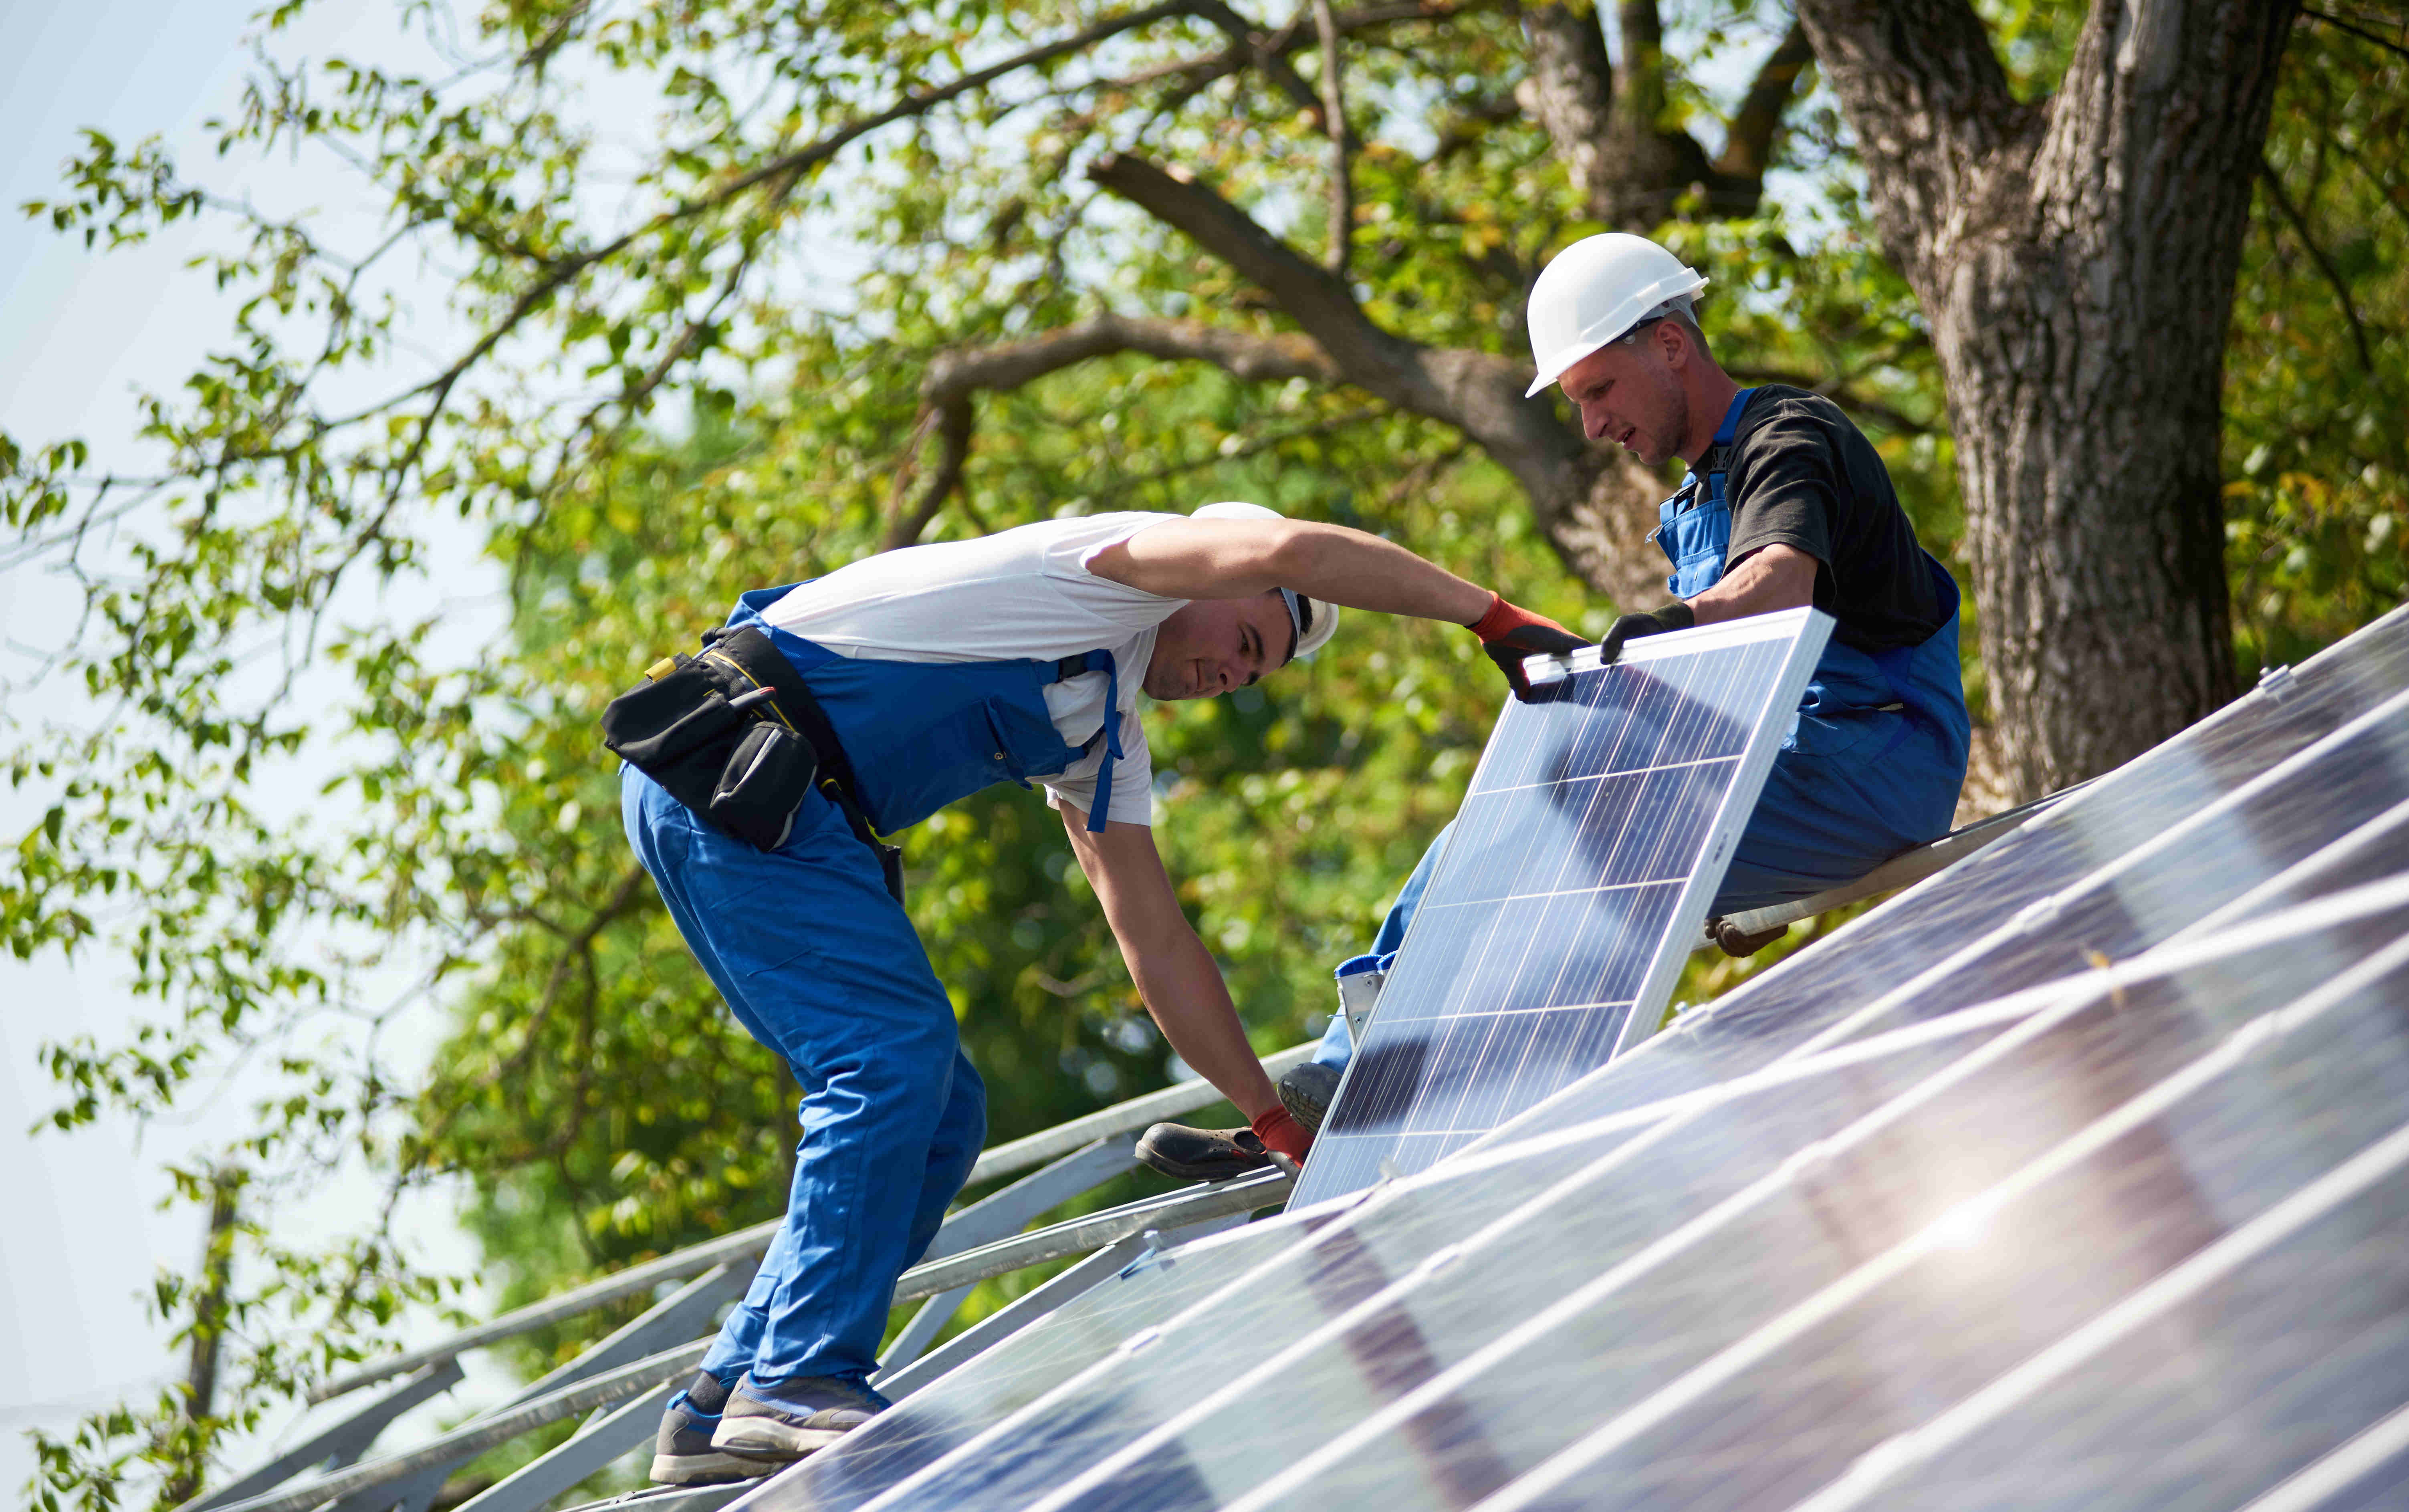 Une recherche révèle qu'environ un tiers des participants envisagent d'acheter un système photovoltaïque en Allemagne